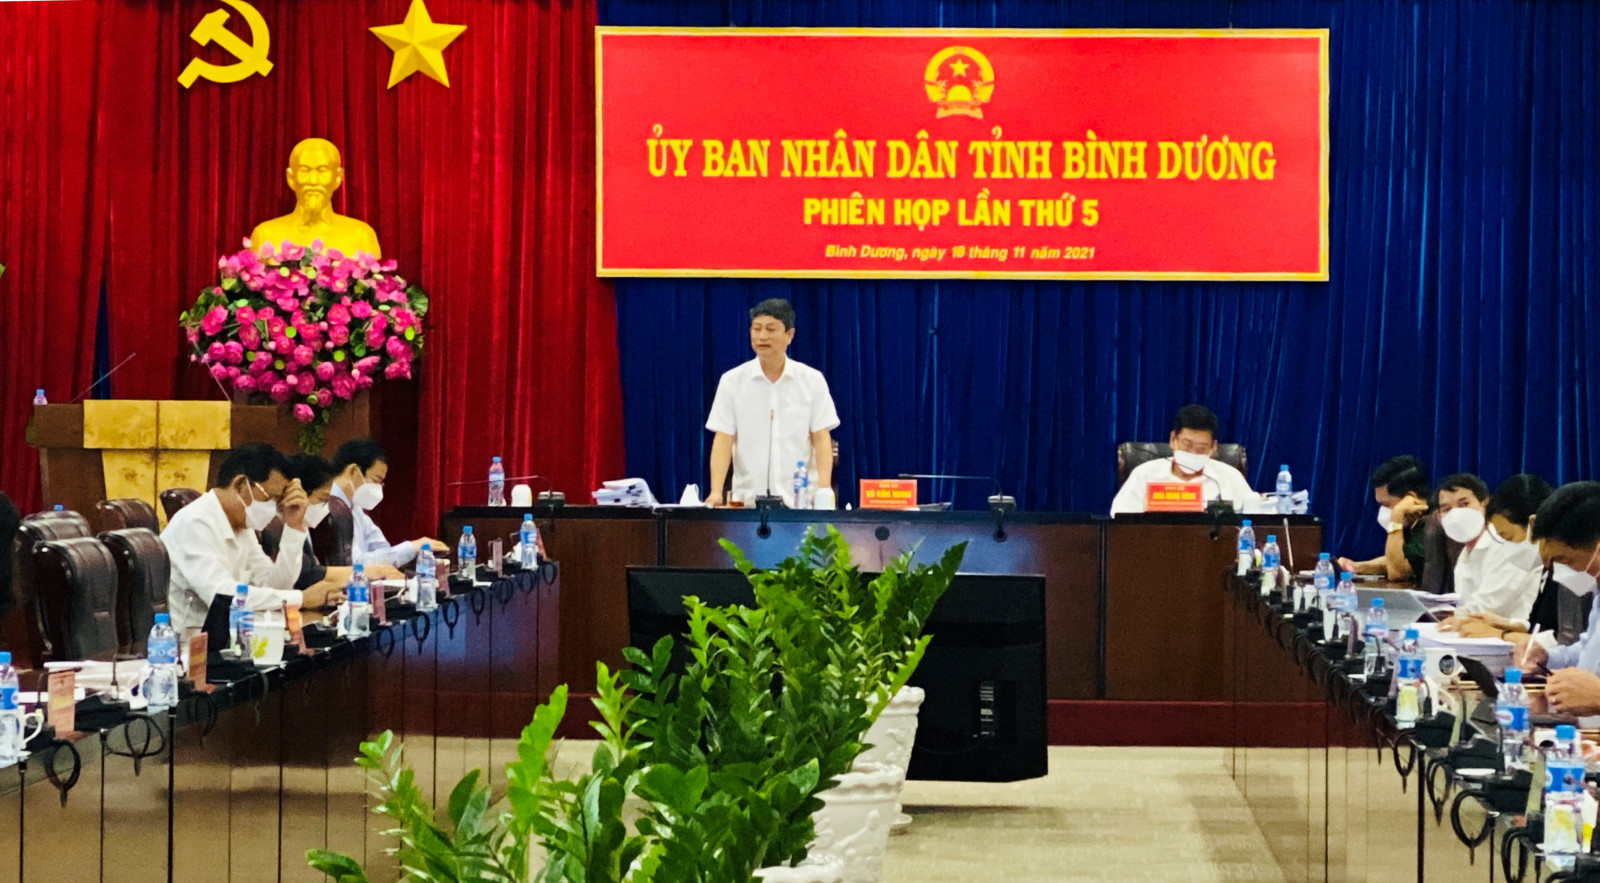 Ông Võ Văn Minh - Phó Bí thư Tỉnh ủy, Chủ tịch UBND tỉnh Bình Dương phát biểu chỉ đạo tại Hội nghị.